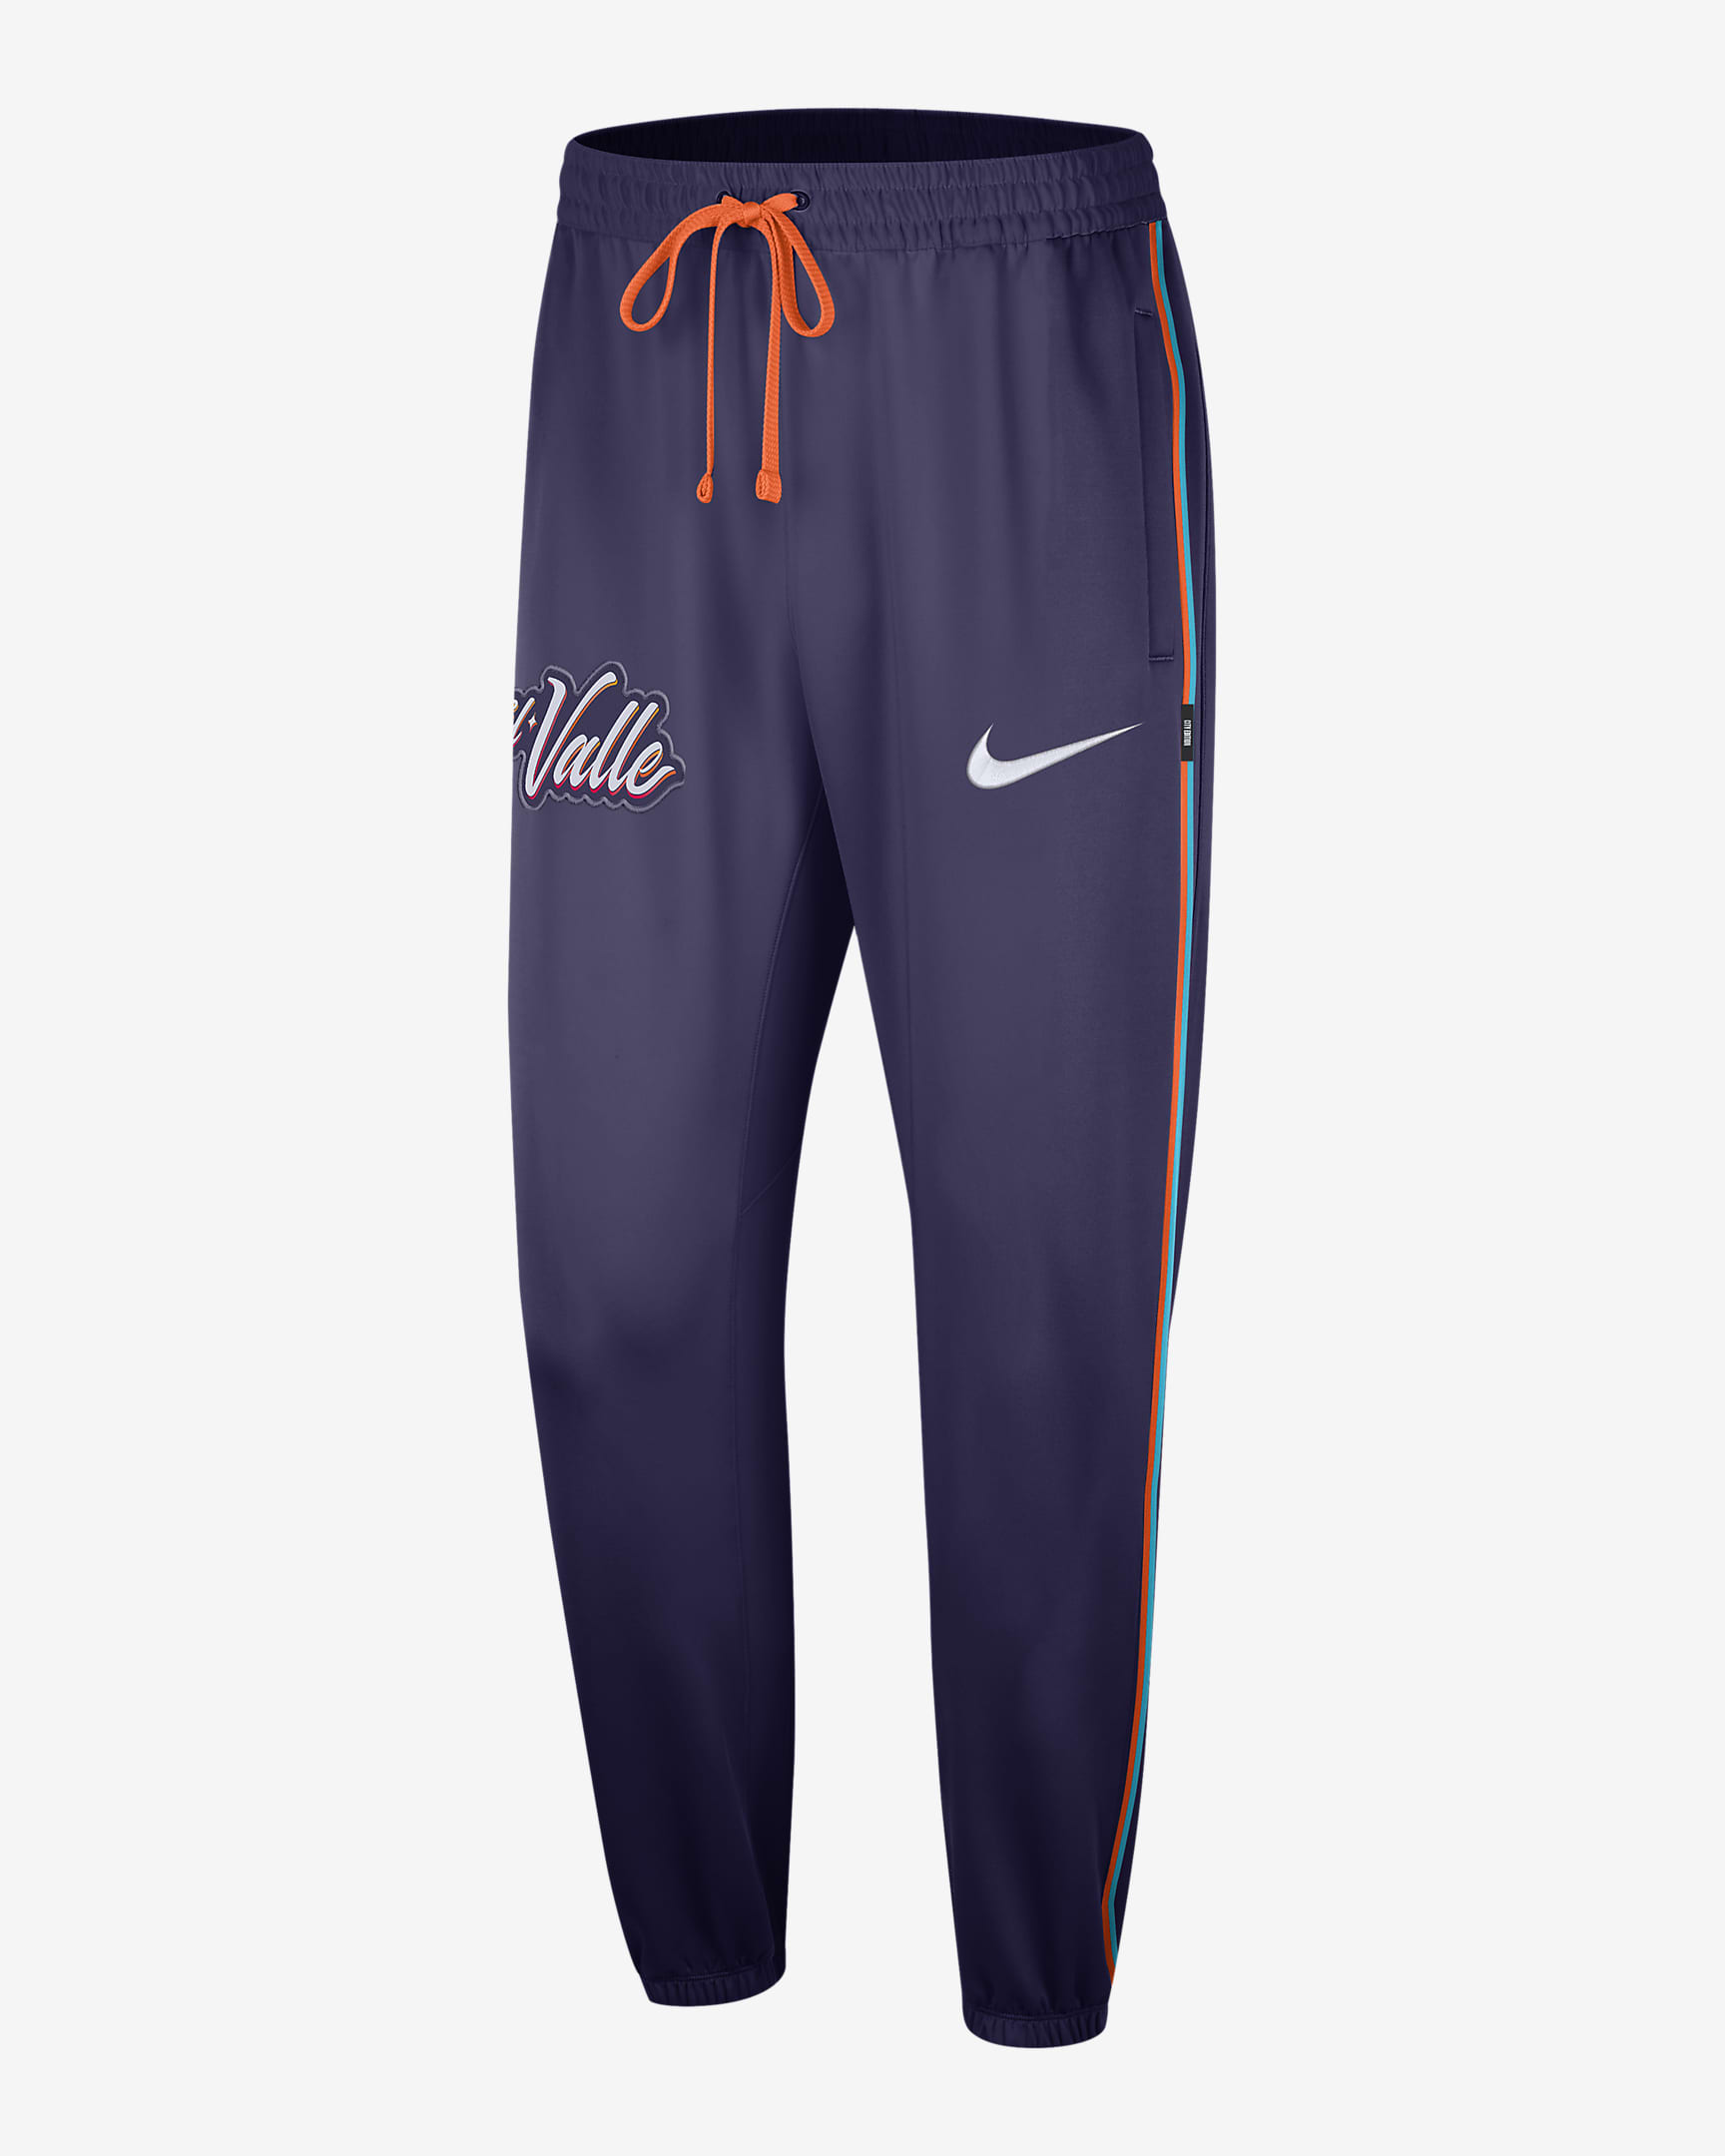 Phoenix Suns Showtime City Edition Men's Nike DriFIT NBA Trousers. Nike PT